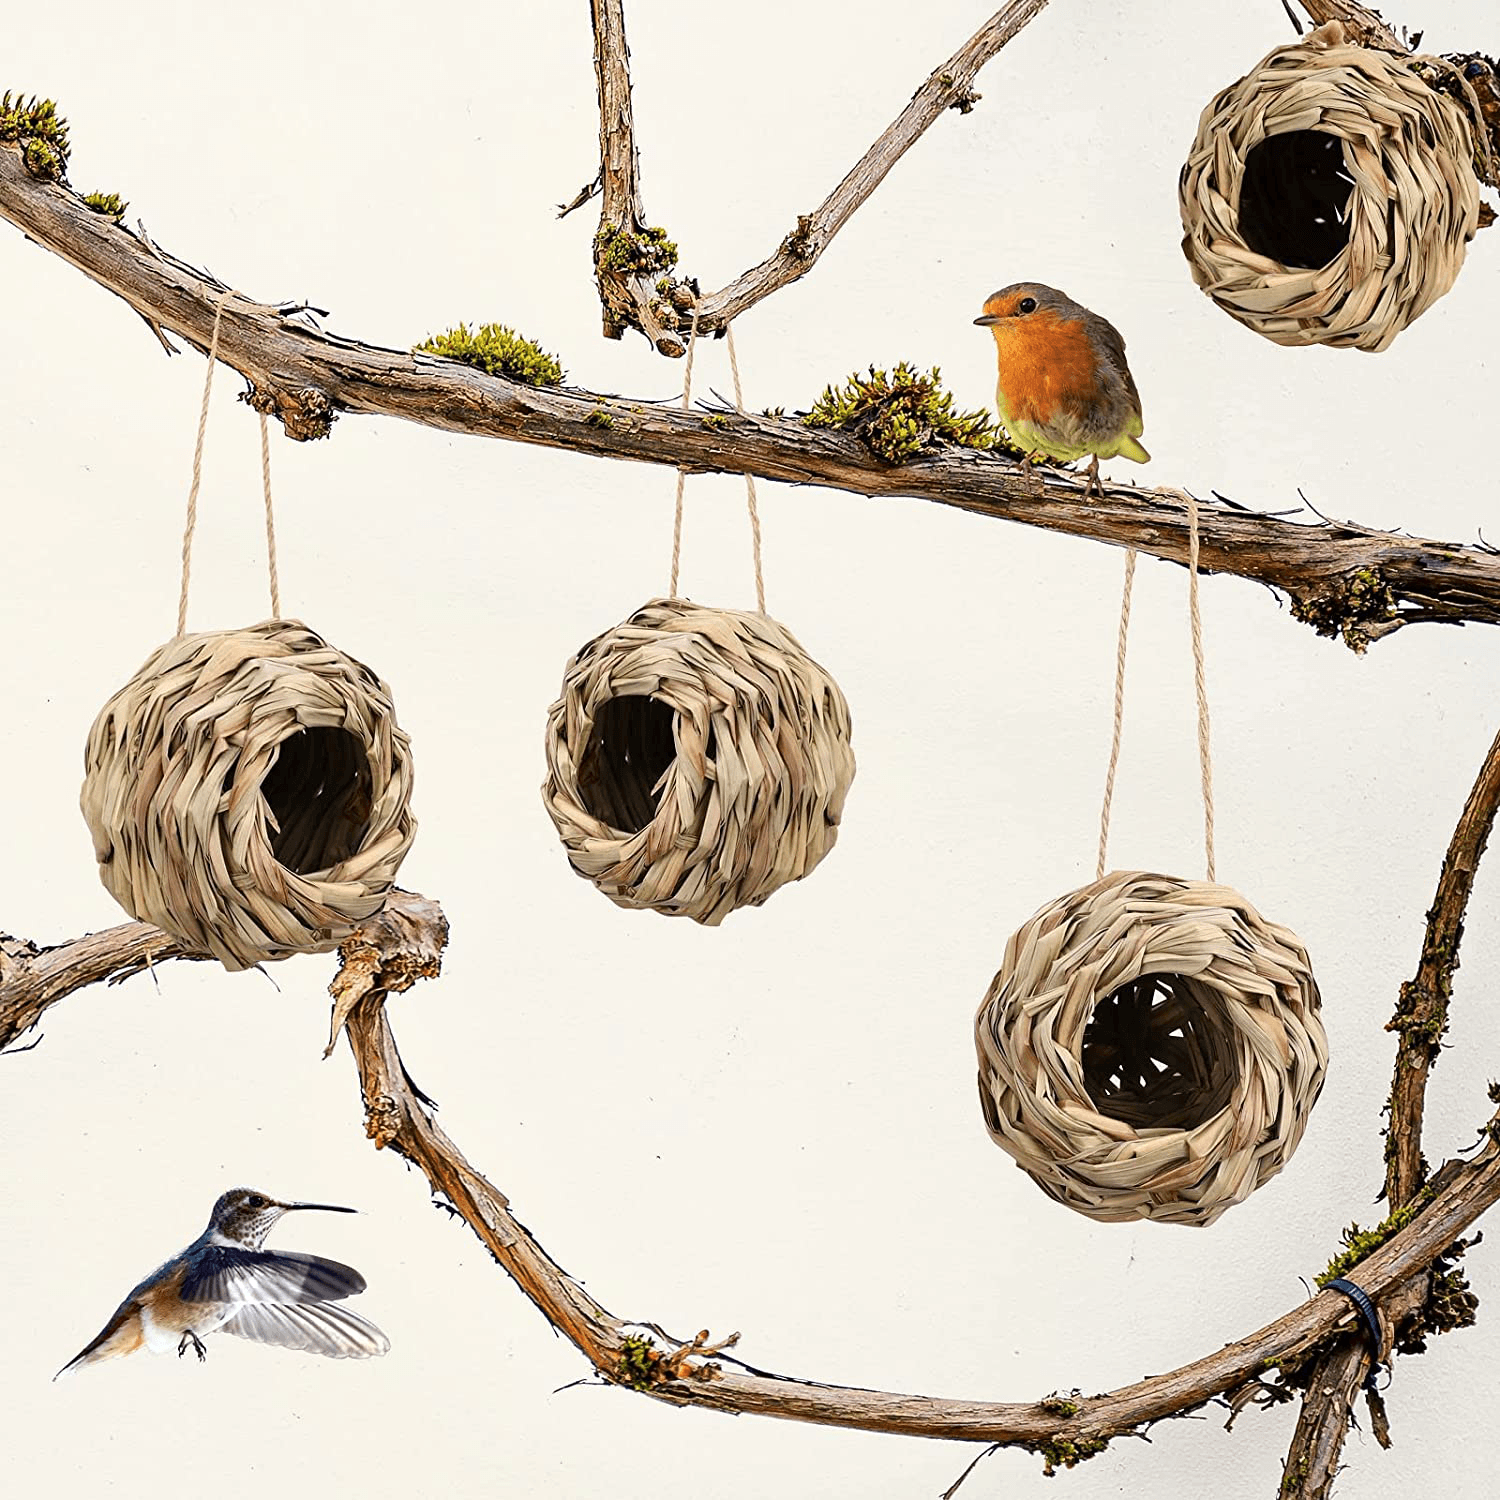 Hand Woven Grass Bird Nest Spherical Hummingbird Birdhouse Hanging